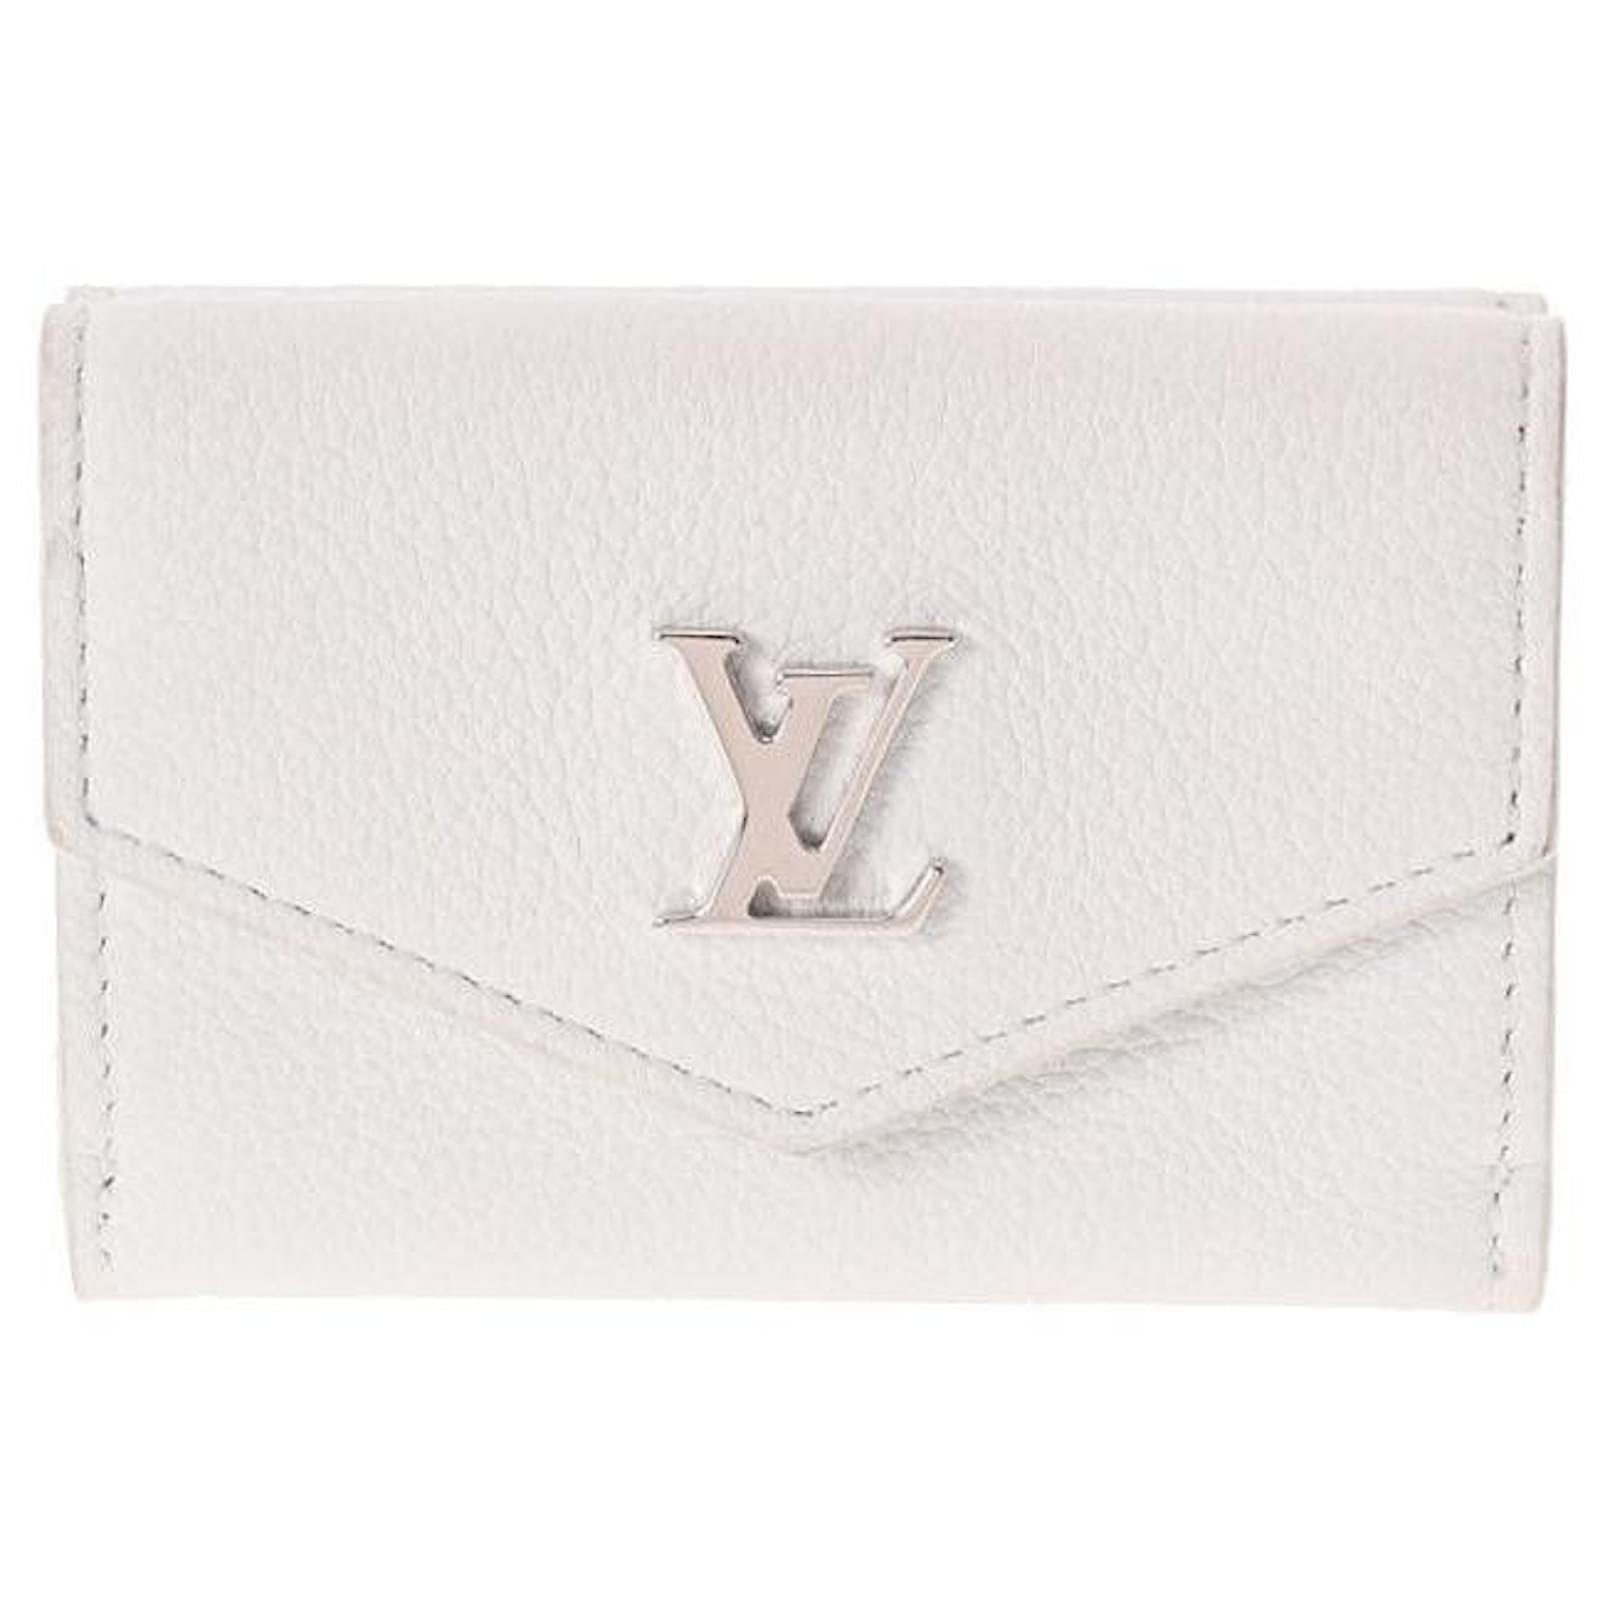 LV Lockmini Wallet, Women's Fashion, Bags & Wallets, Wallets